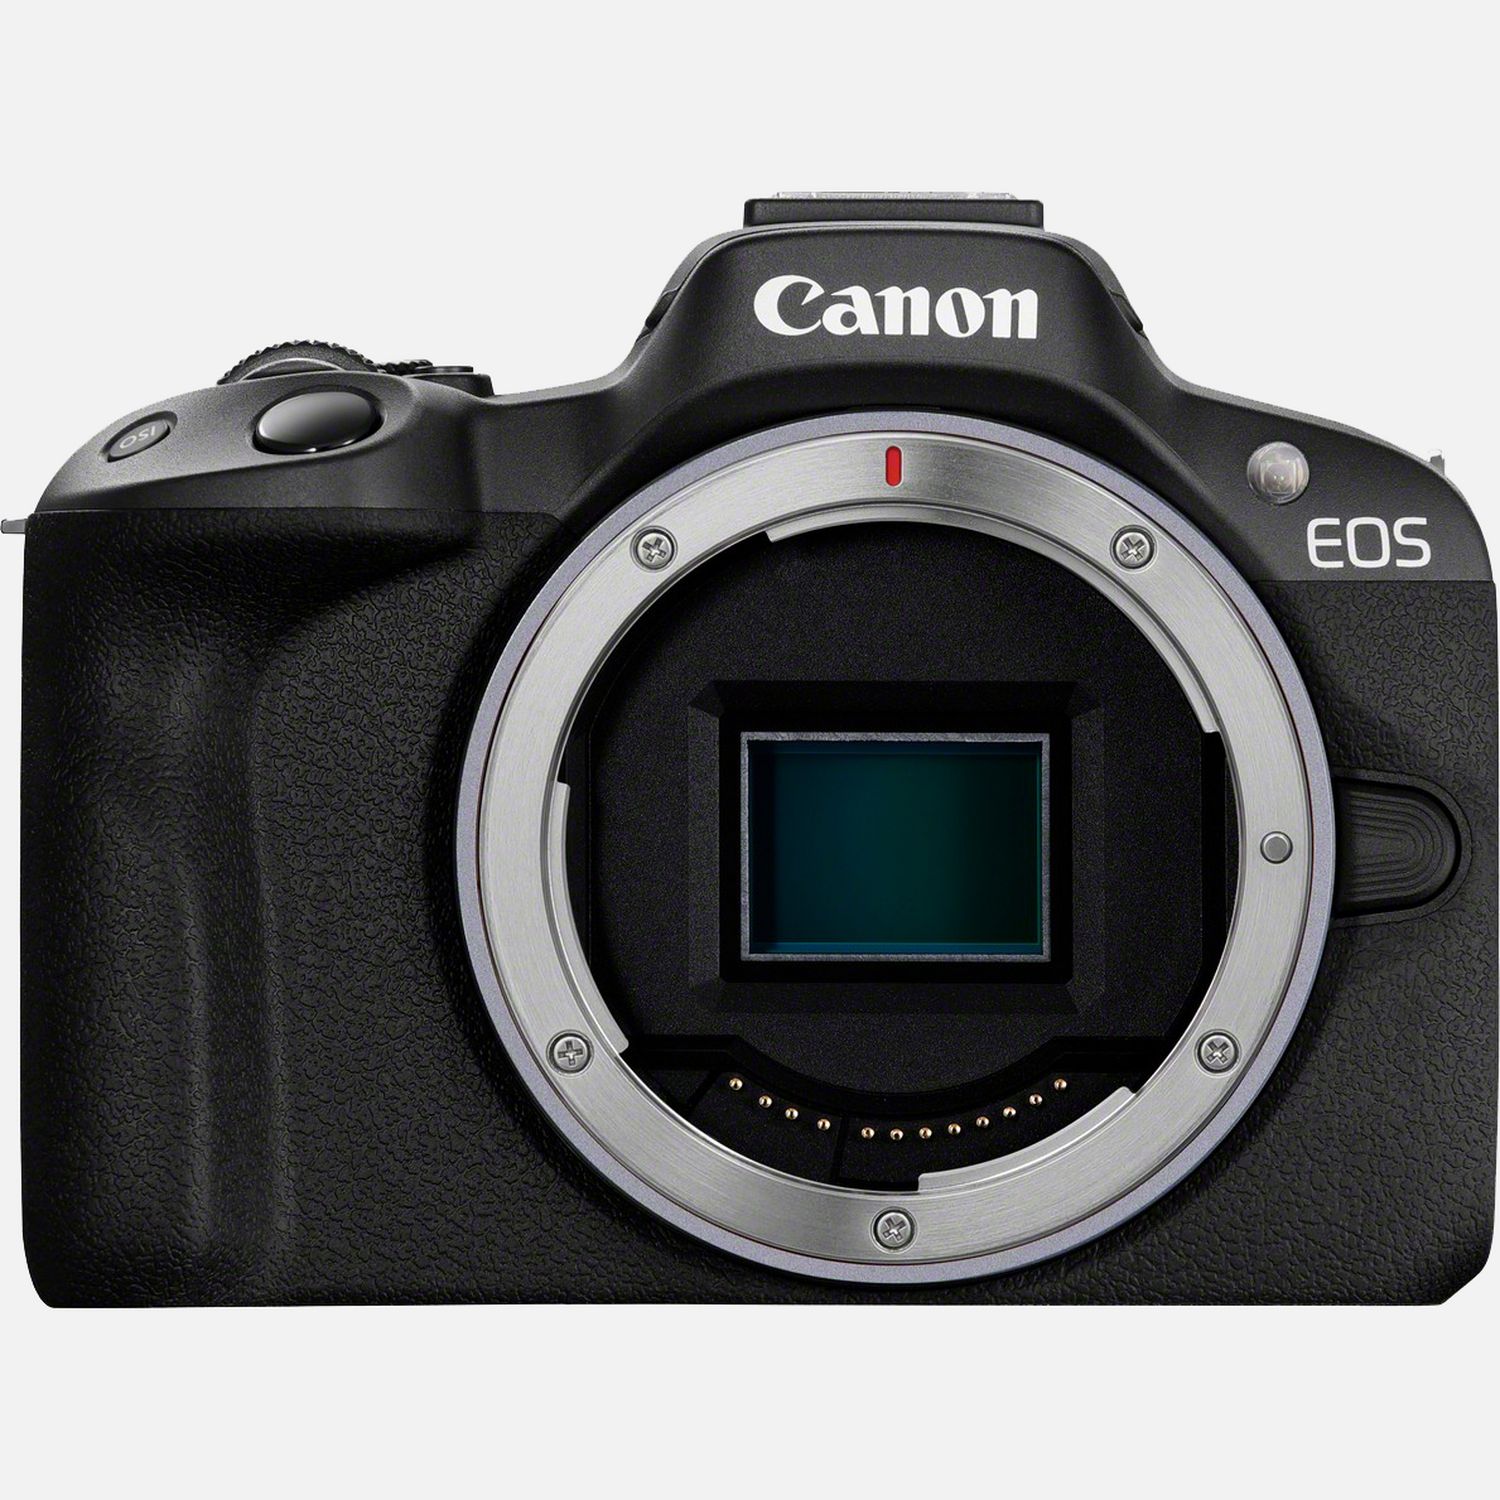 Grondwet Tot ziens Bemiddelaar Canon EOS R50-systeemcamera, body, zwart in Wifi-camera's — Canon Nederland  Store